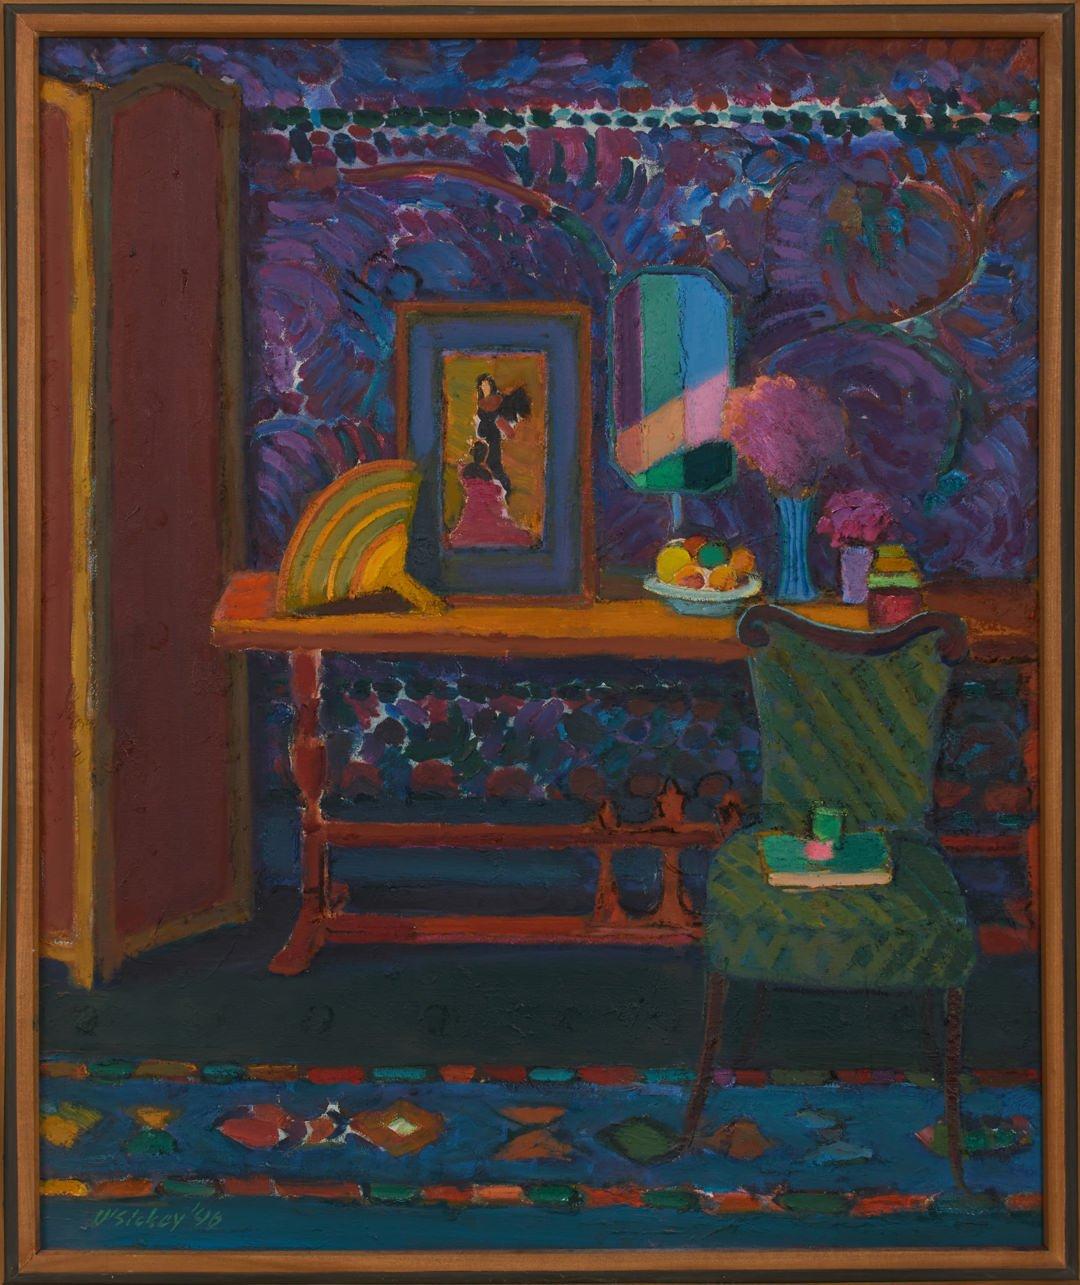 Interieur-Stillleben mit grünem Stuhl, 1996 – Postimpressionistischer Künstler aus Ohio – Painting von Joseph O'Sickey